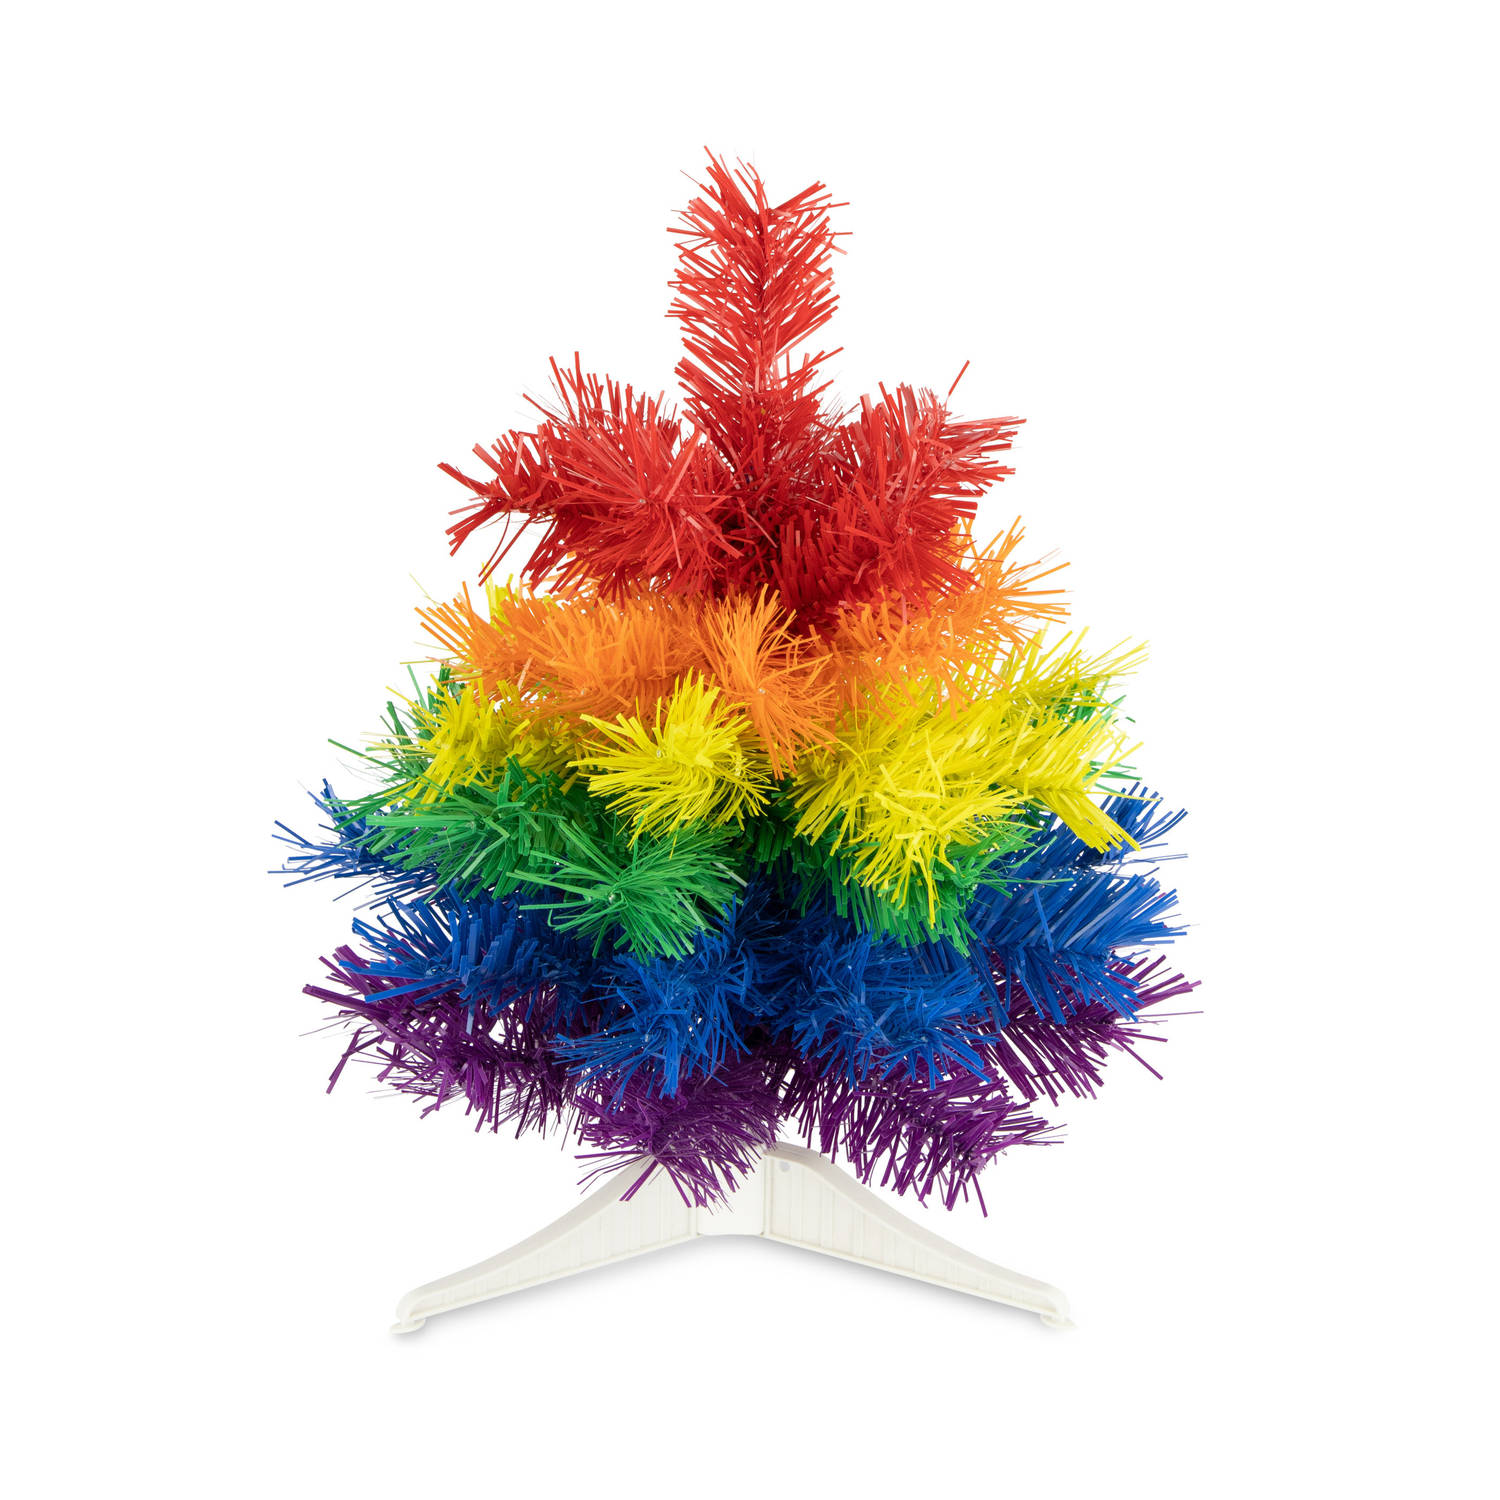 R en W kunst kerstboom klein regenboog kleuren H30 cmA?Æ?A¢a?¬A¡A?a??A?A - kunststof Kunstkerstboom